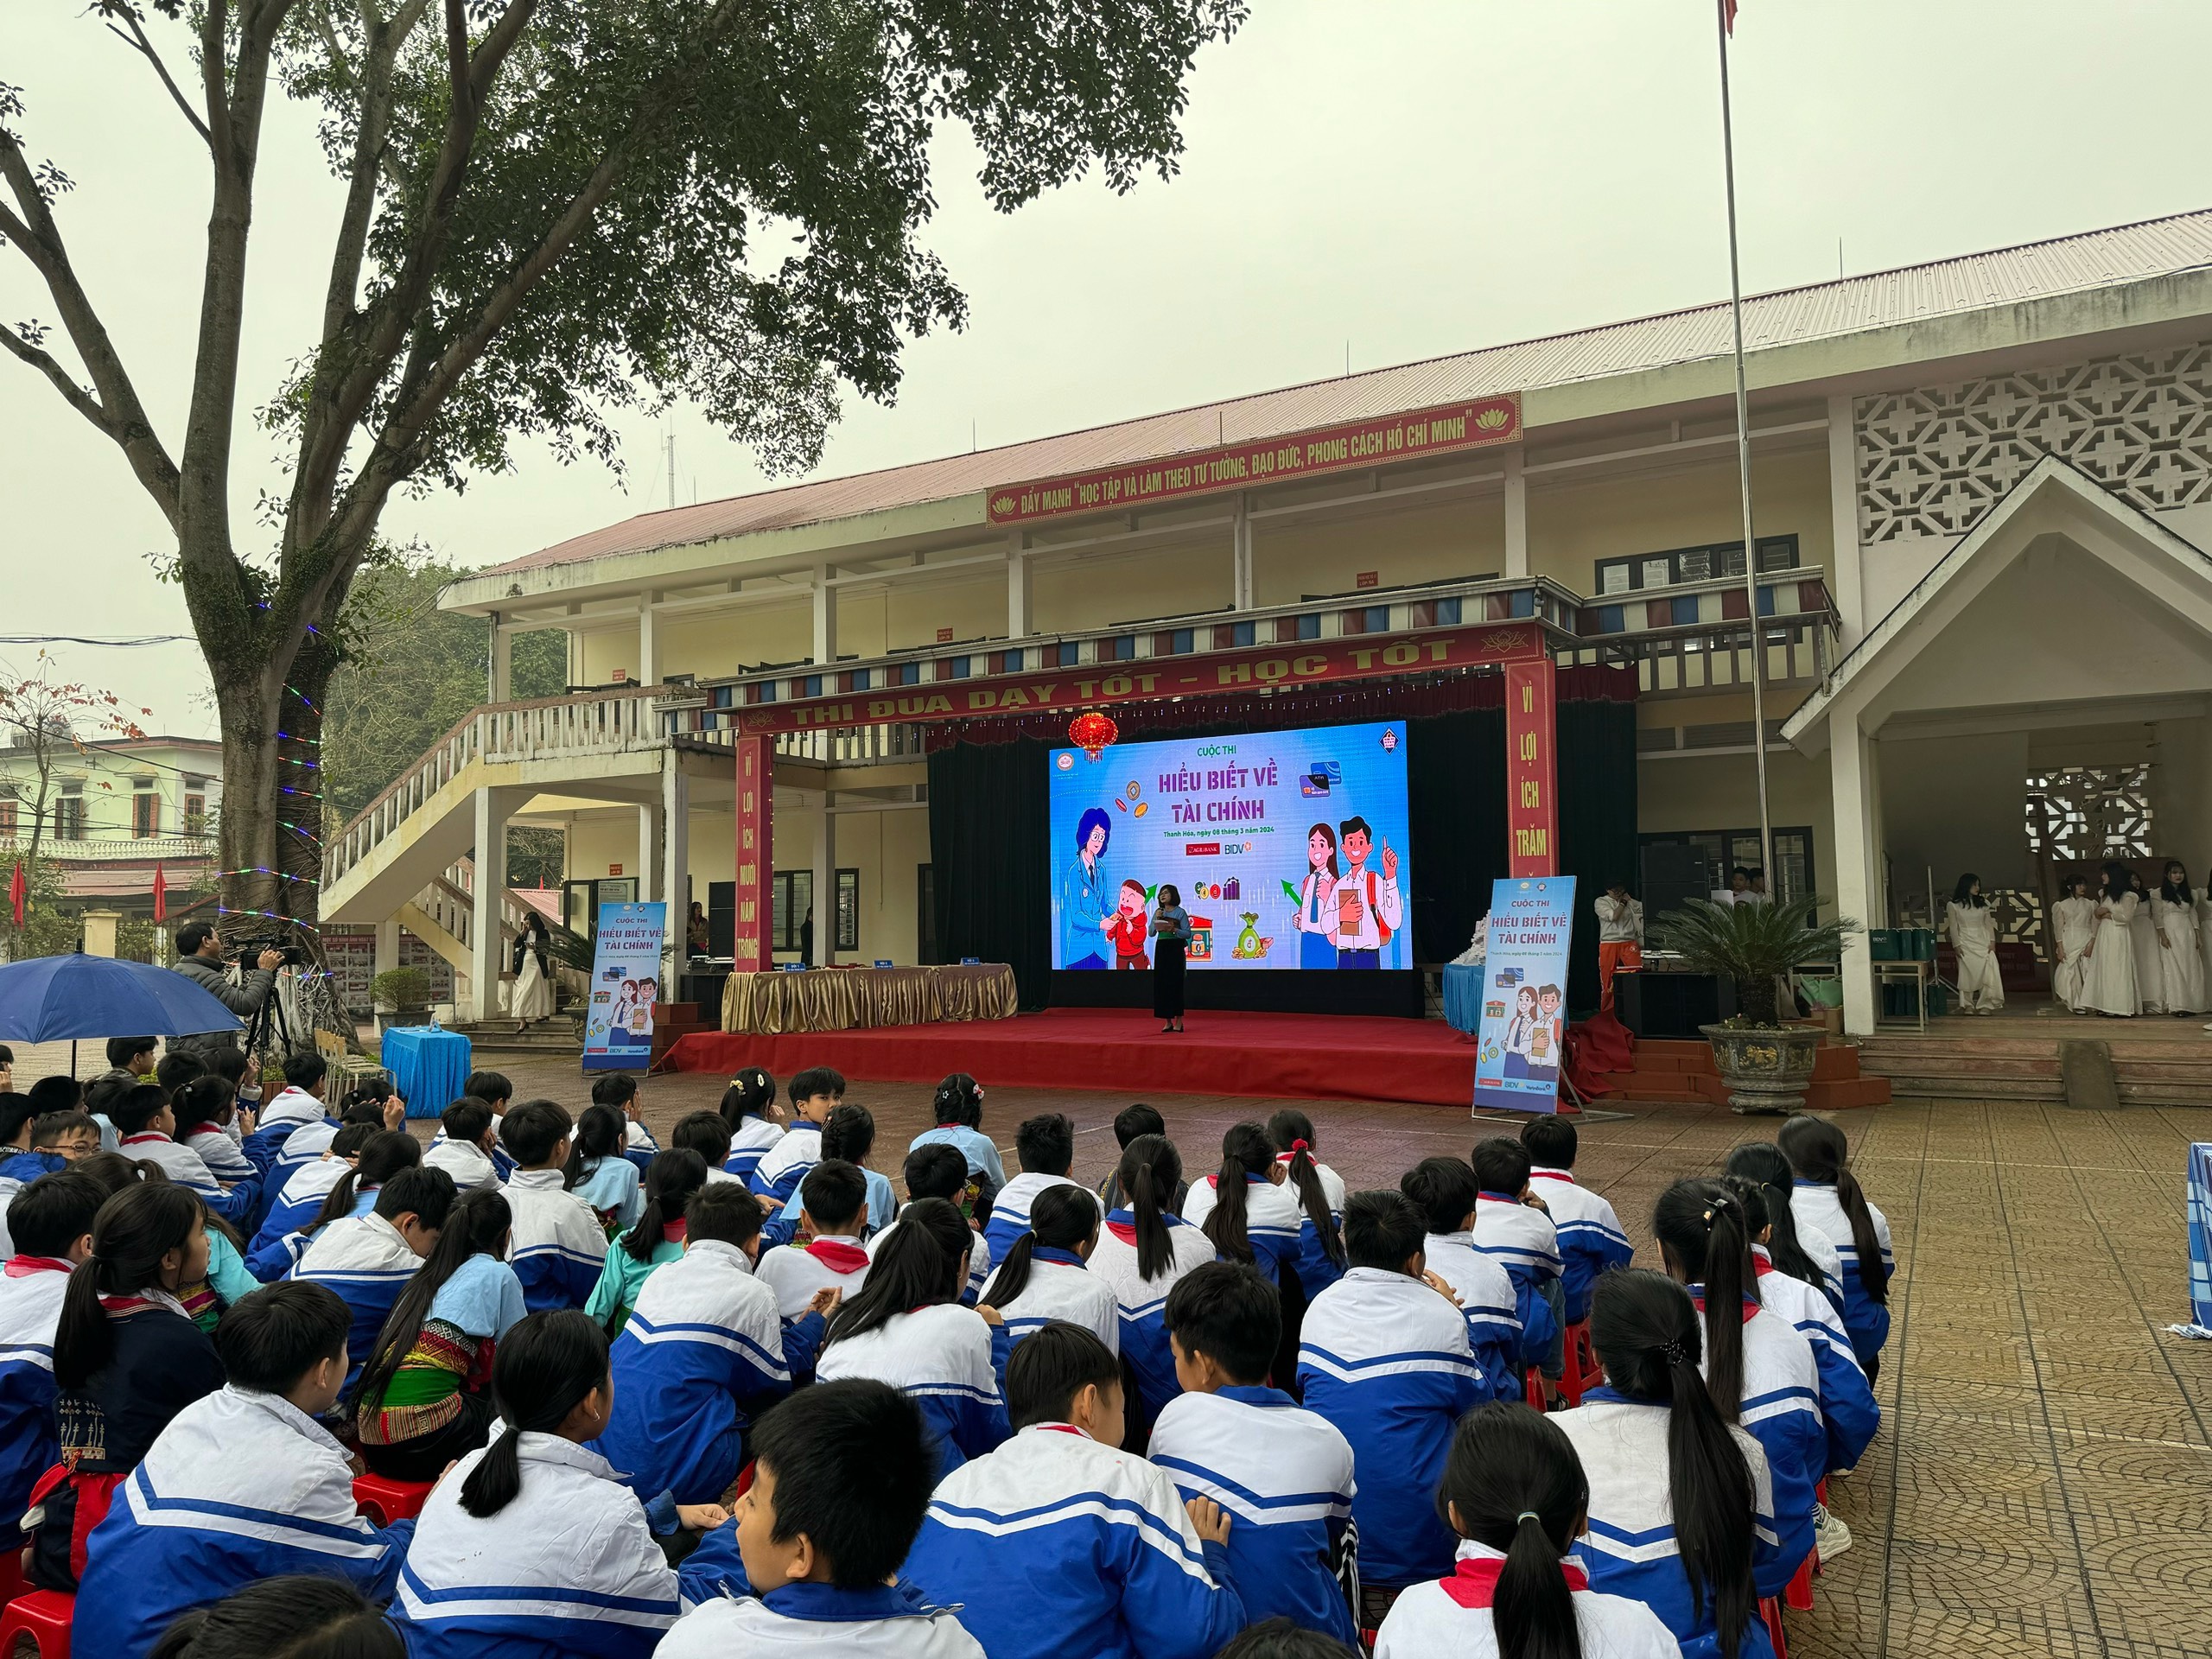 Cuộc thi Hiểu biết về tài chính được tổ chức cho gần 1800 học sinh trung học tại Thanh Hóa- Ảnh 1.